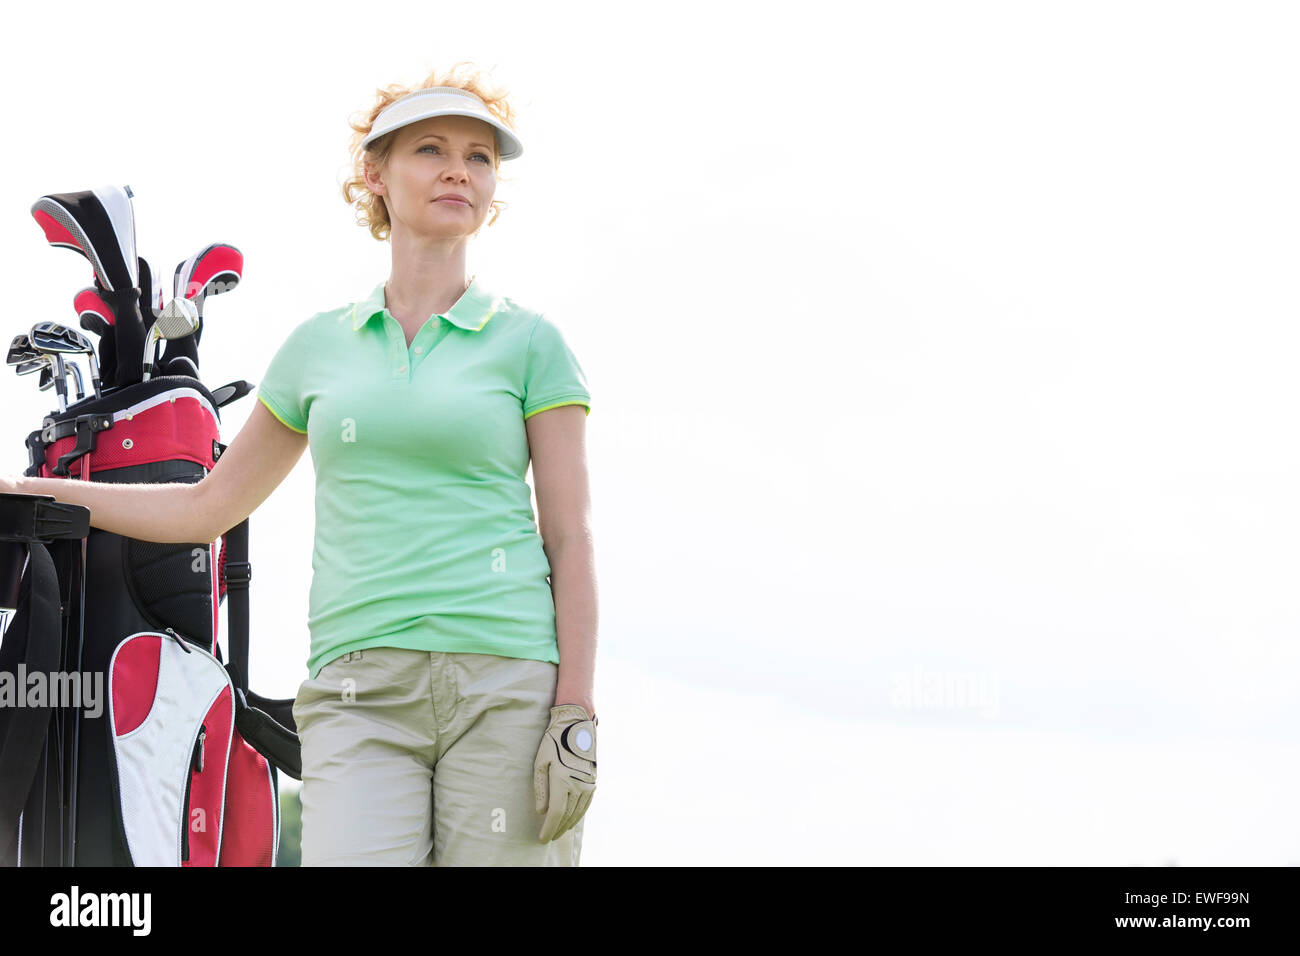 Basso angolo di vista fiducioso golfista femmina in piedi contro il cielo chiaro Foto Stock